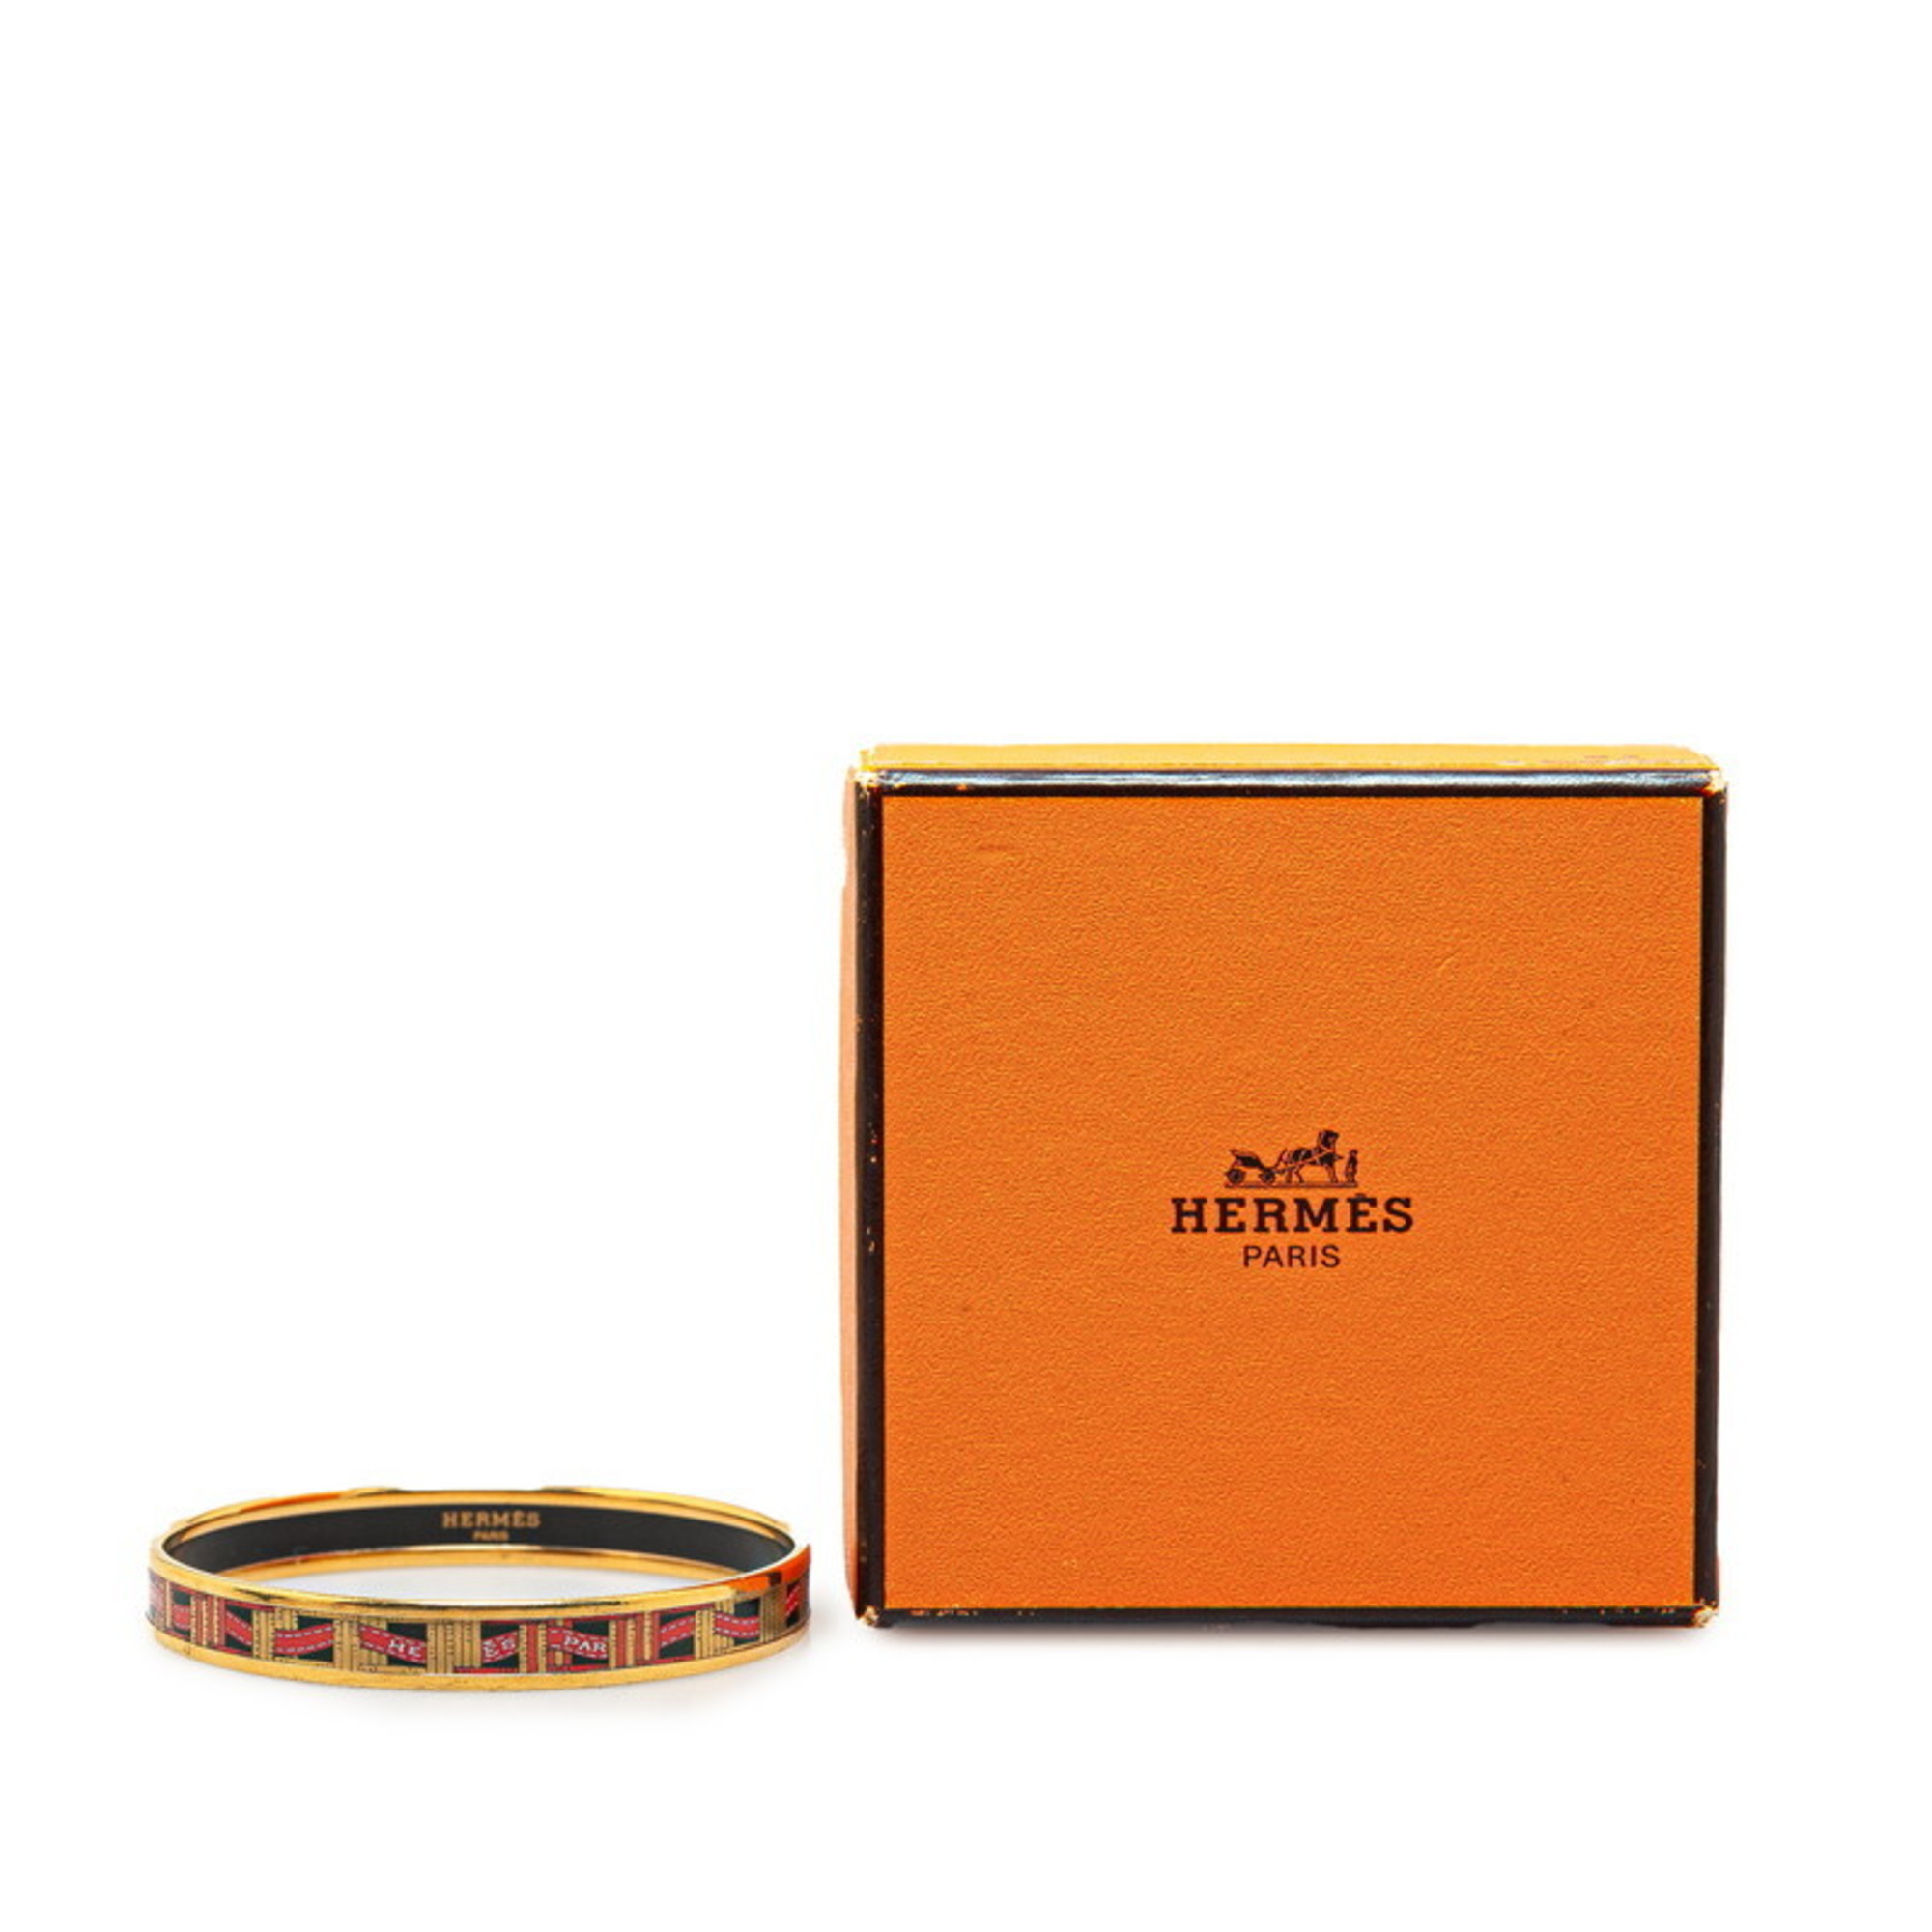 Hermes enamel PM ribbon cloisonne bangle red gold black plating women's HERMES